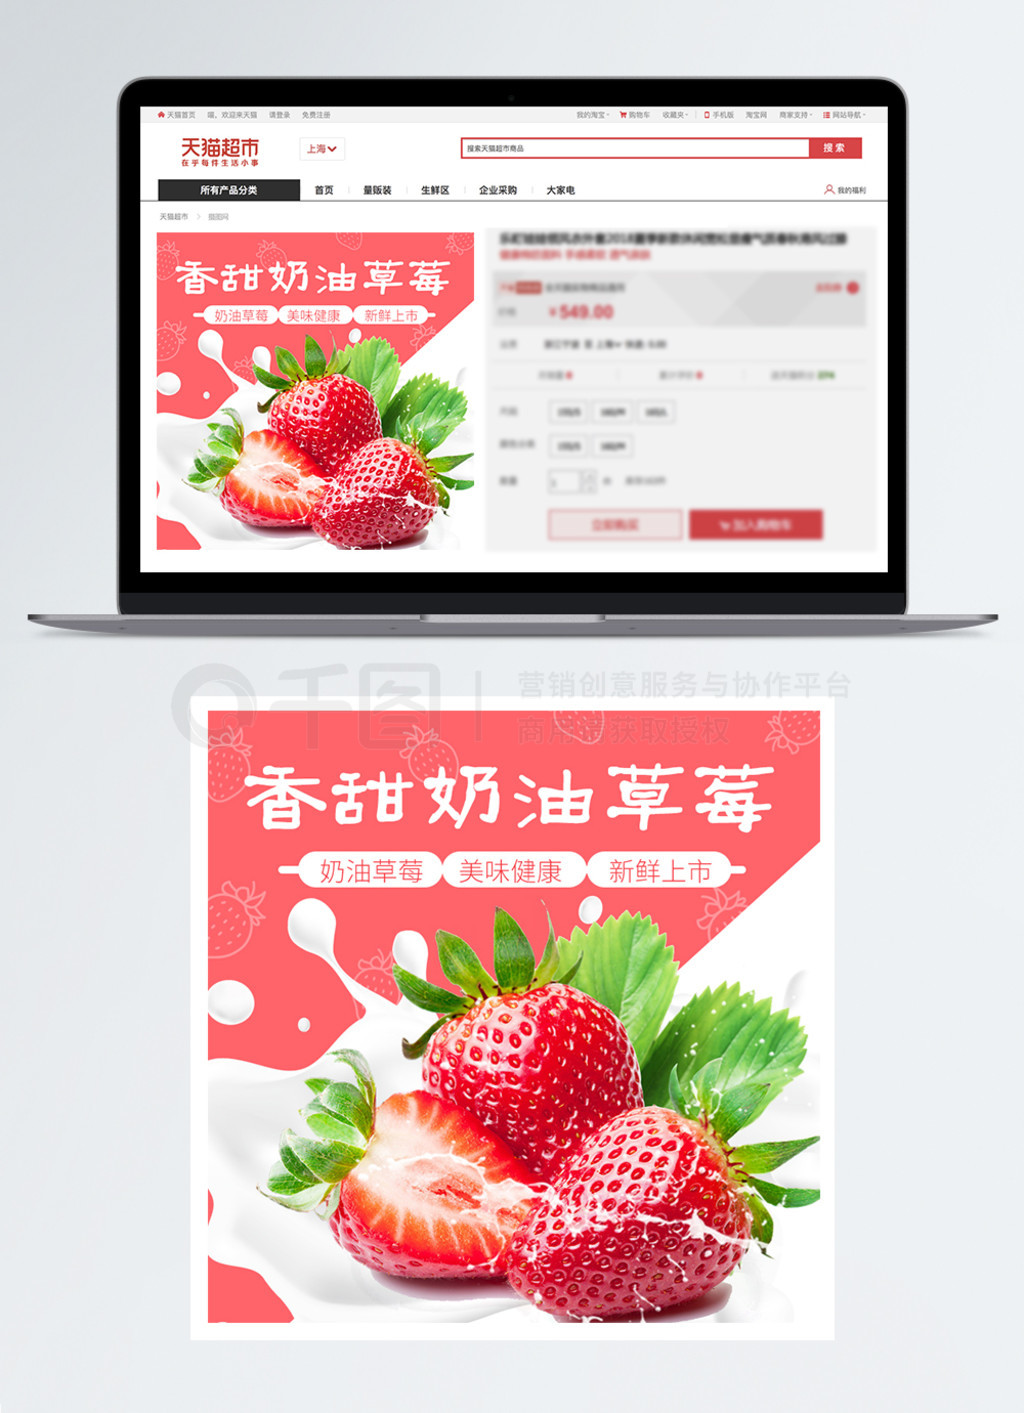 新鲜香甜奶油草莓水果促销淘宝主图模板免费下载_psd格式_650像素_编号34274799